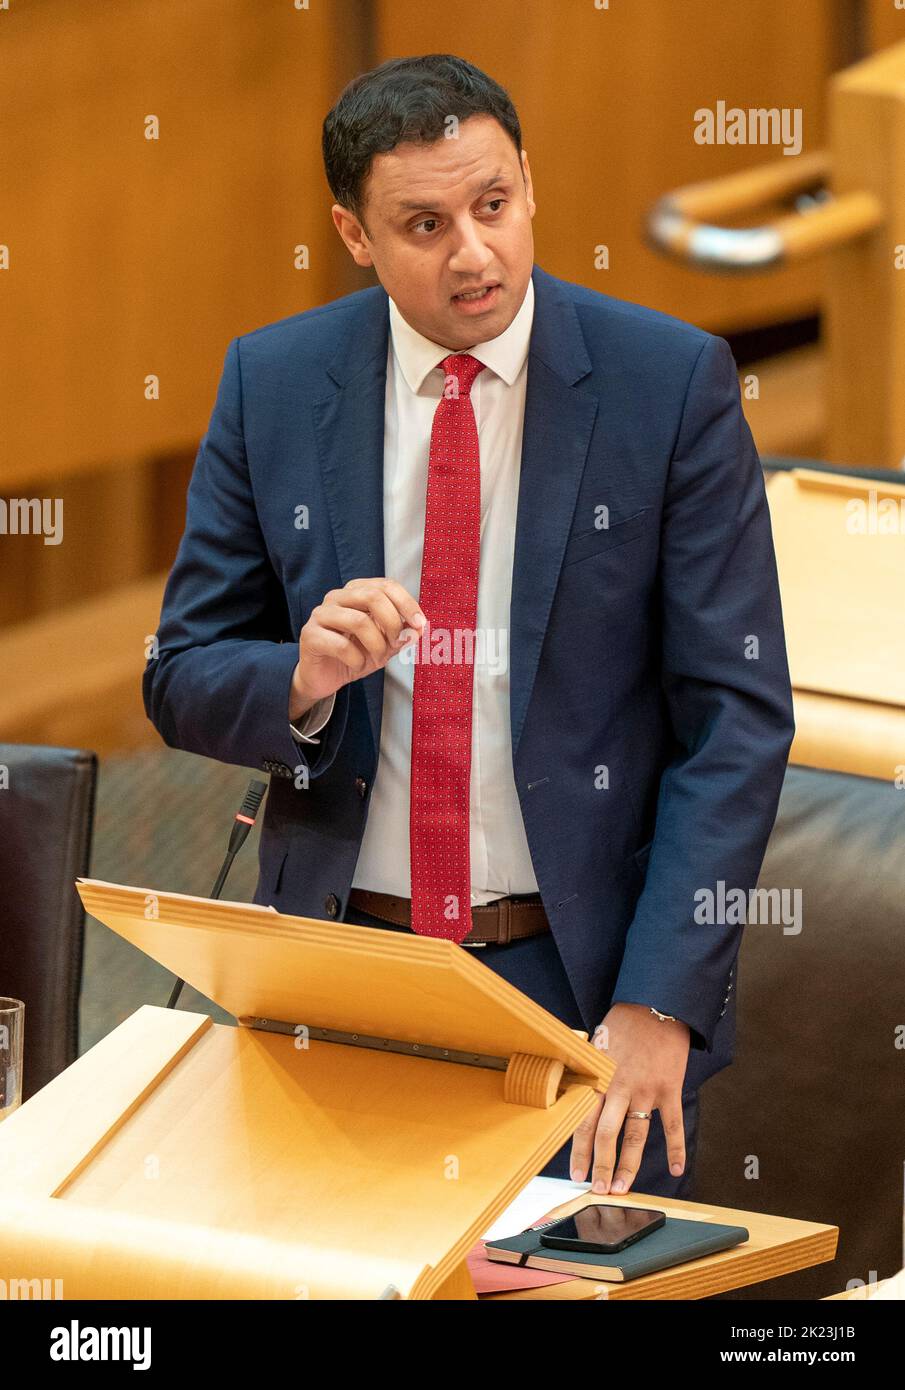 Il leader del lavoro scozzese Anas Sarwar durante le prime interrogazioni del Ministro (FMQ) nella camera di discussione del Parlamento scozzese a Edimburgo. Data immagine: Giovedì 22 settembre 2022. Foto Stock